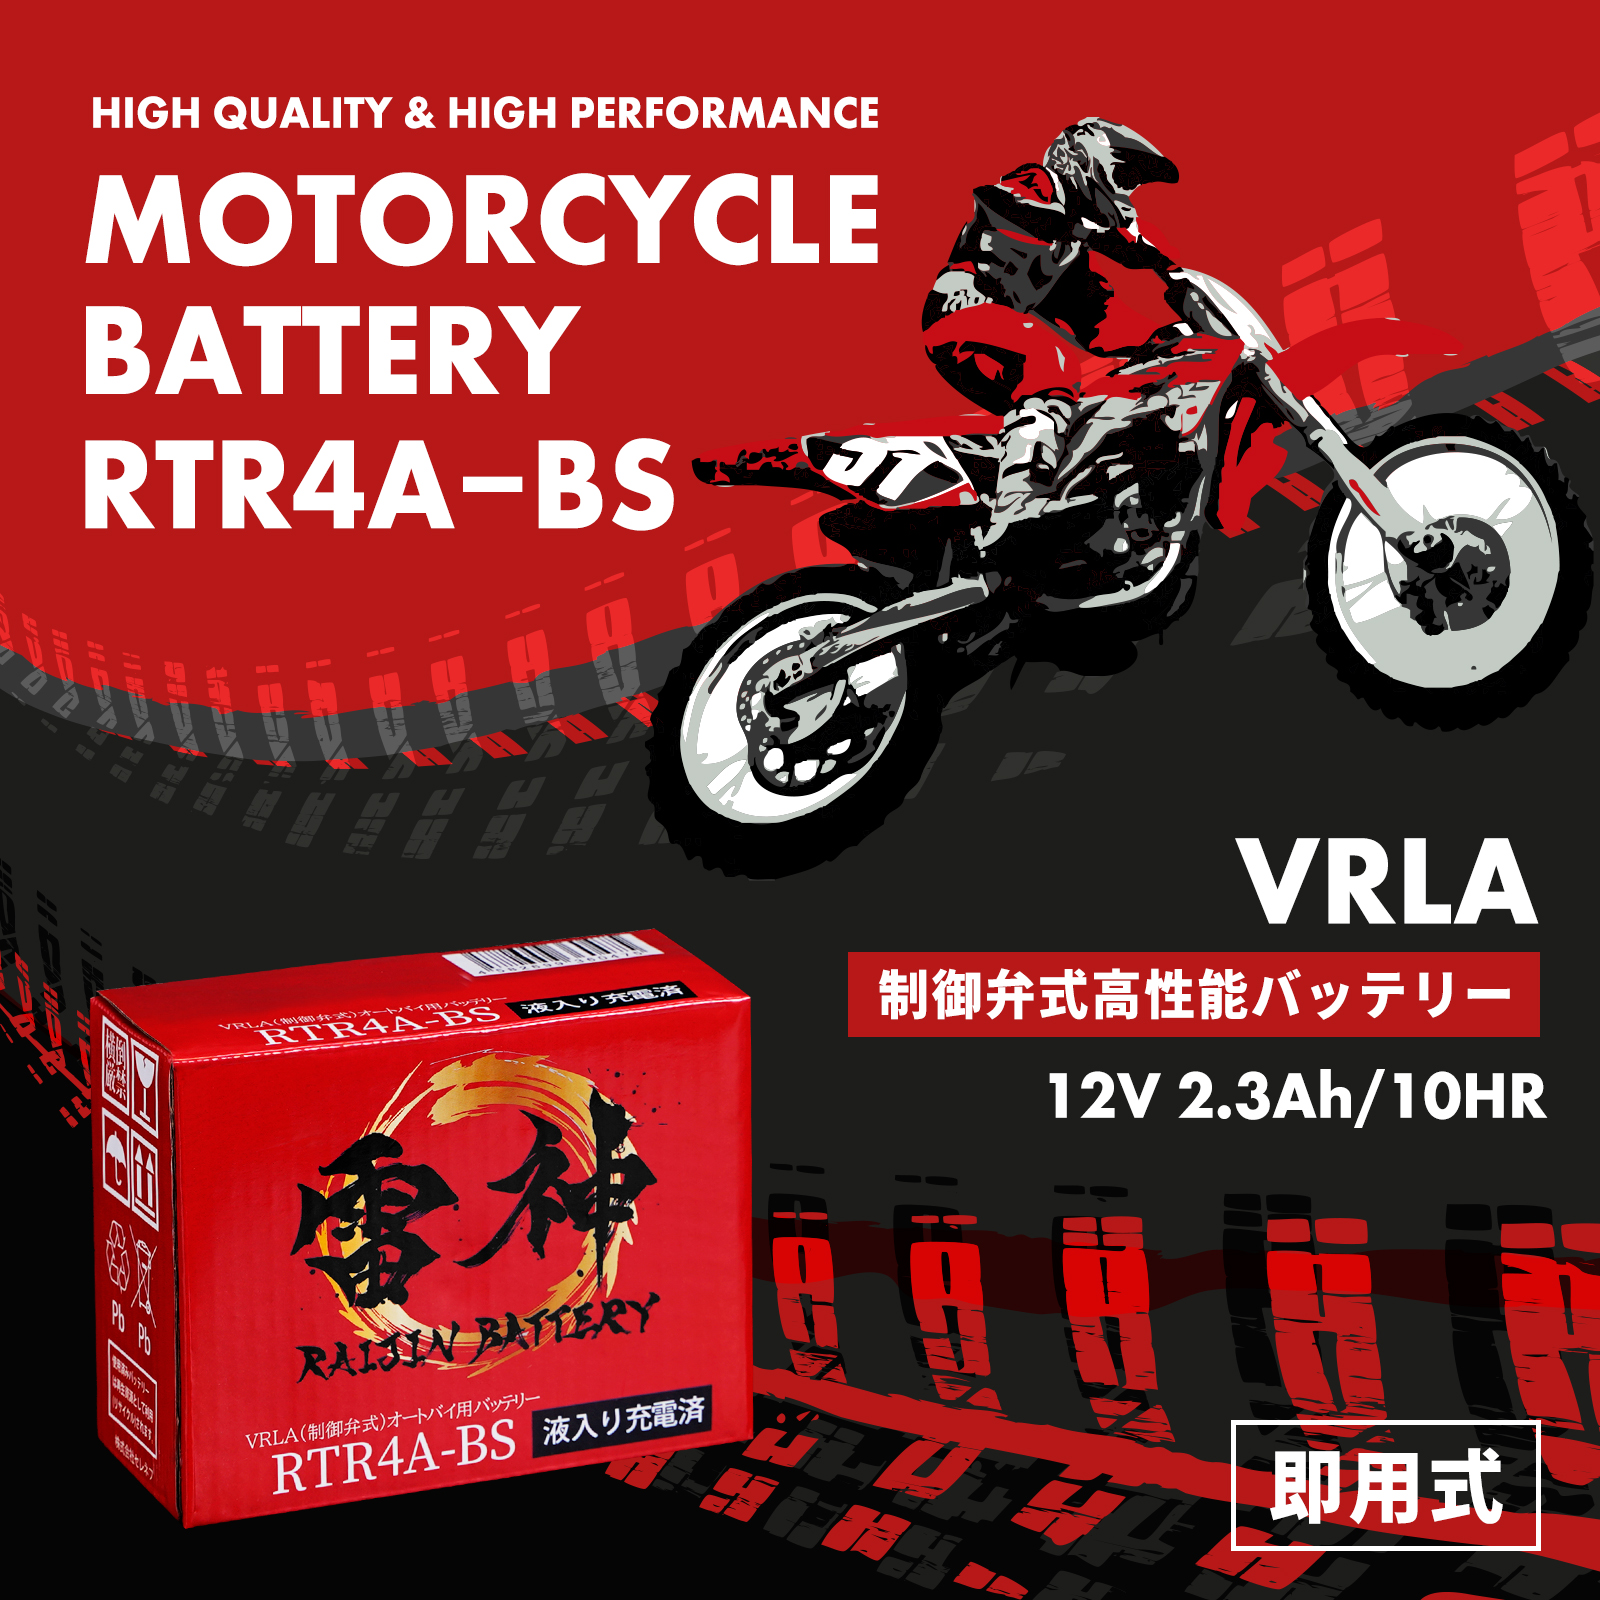 雷神バッテリー 高性能 VRLA(制御弁式) バイク バッテリー オートバイ 